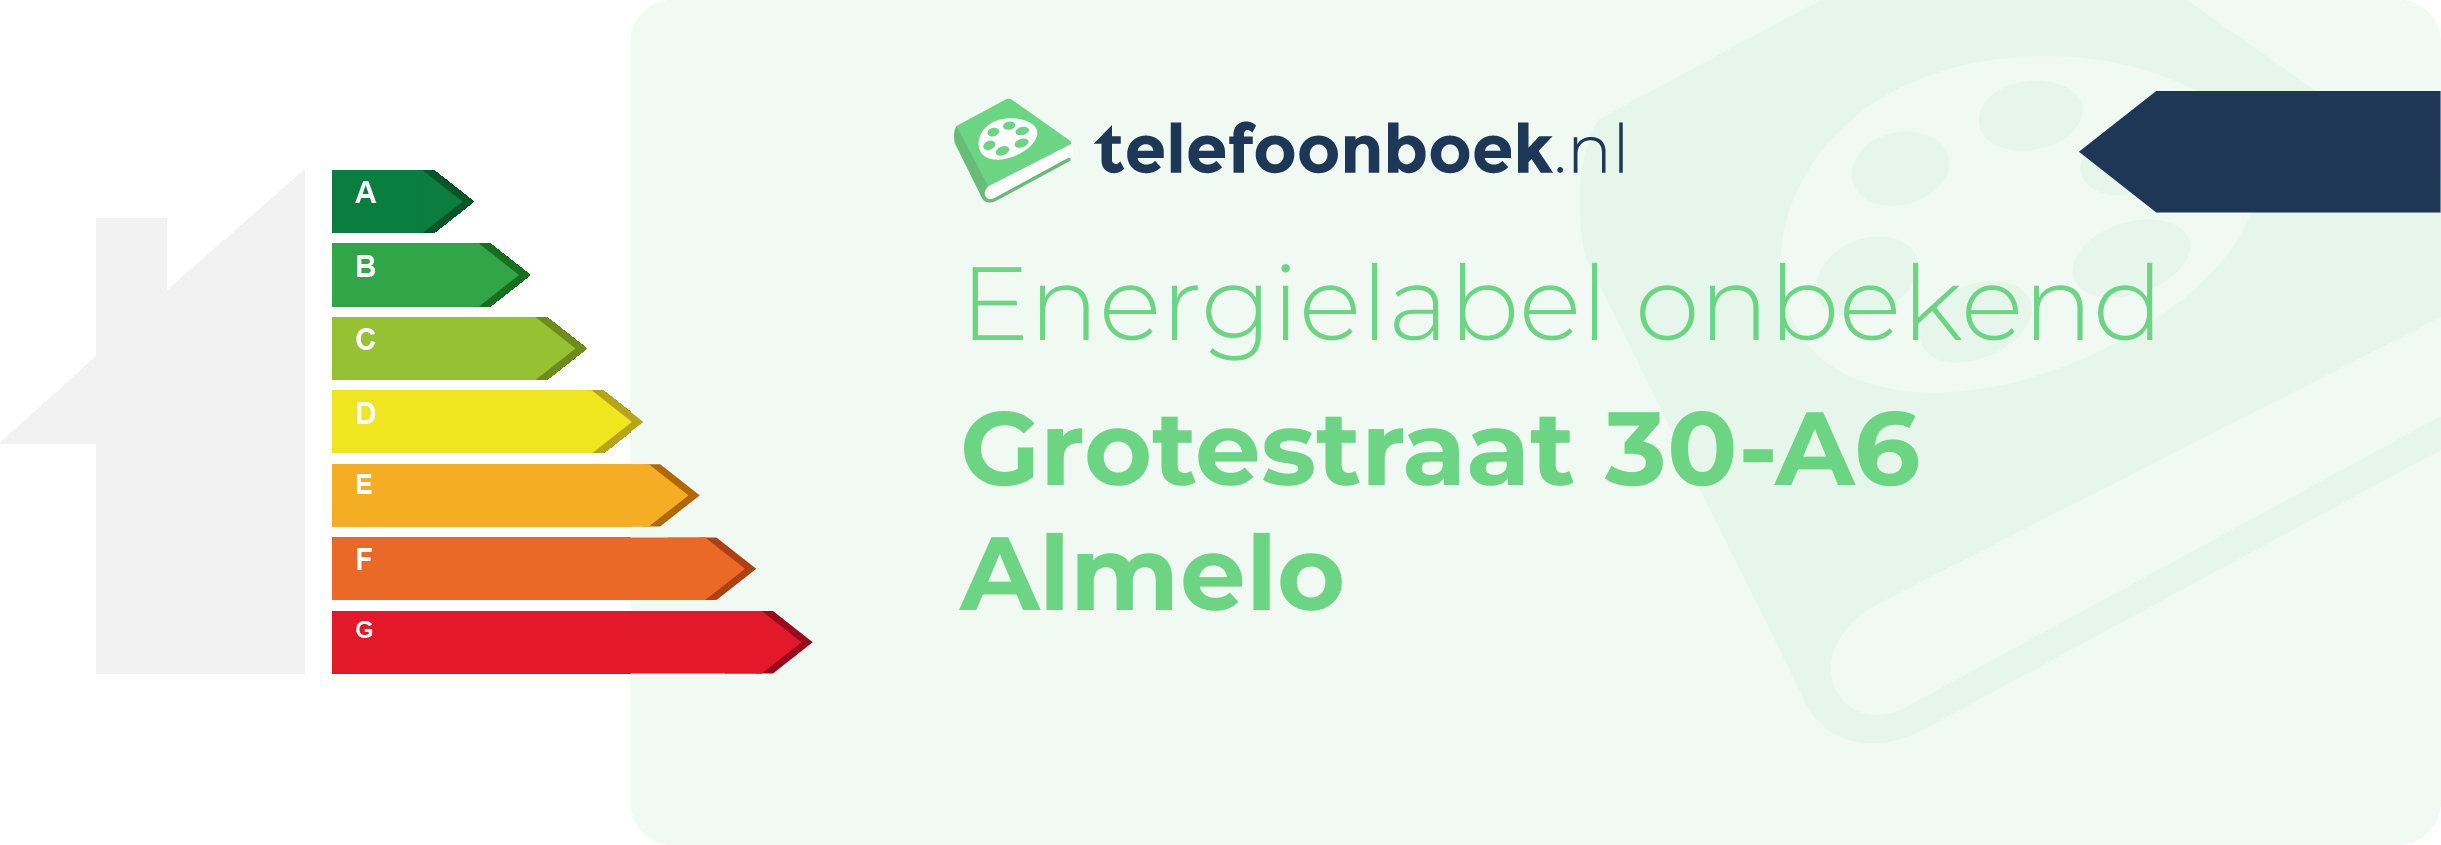 Energielabel Grotestraat 30-A6 Almelo